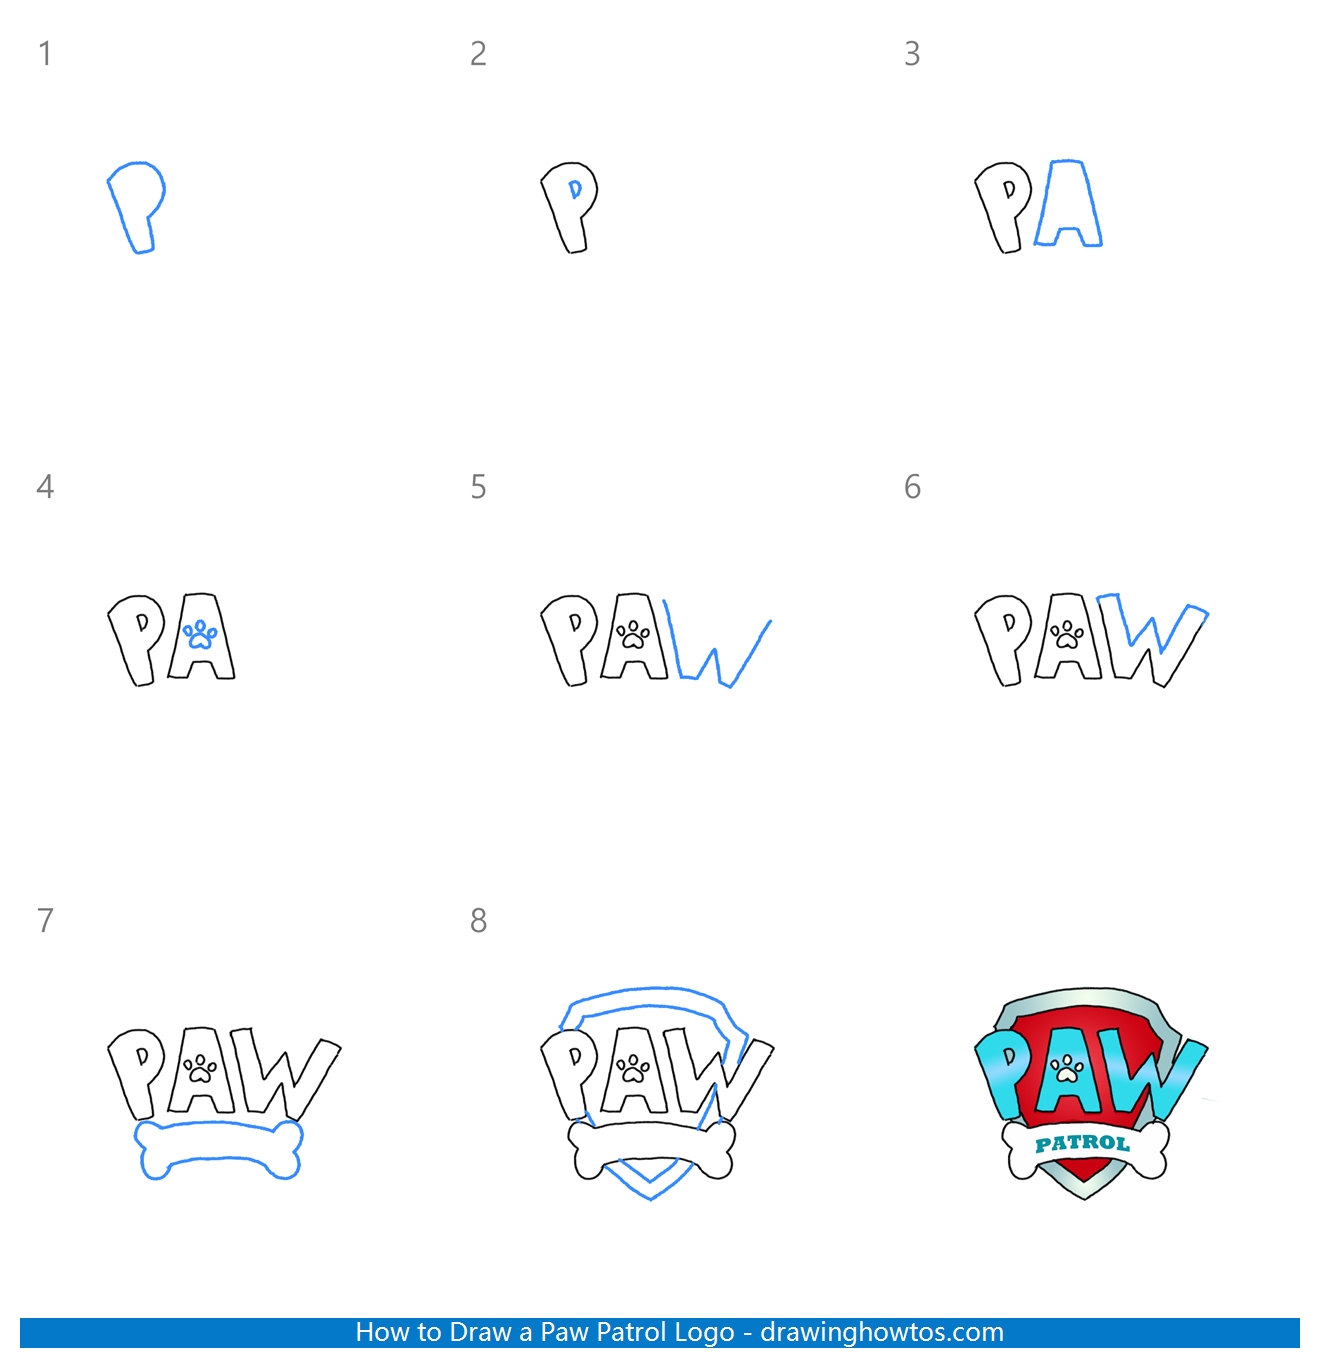 How to Draw Paw Patrol Logo Step by Step